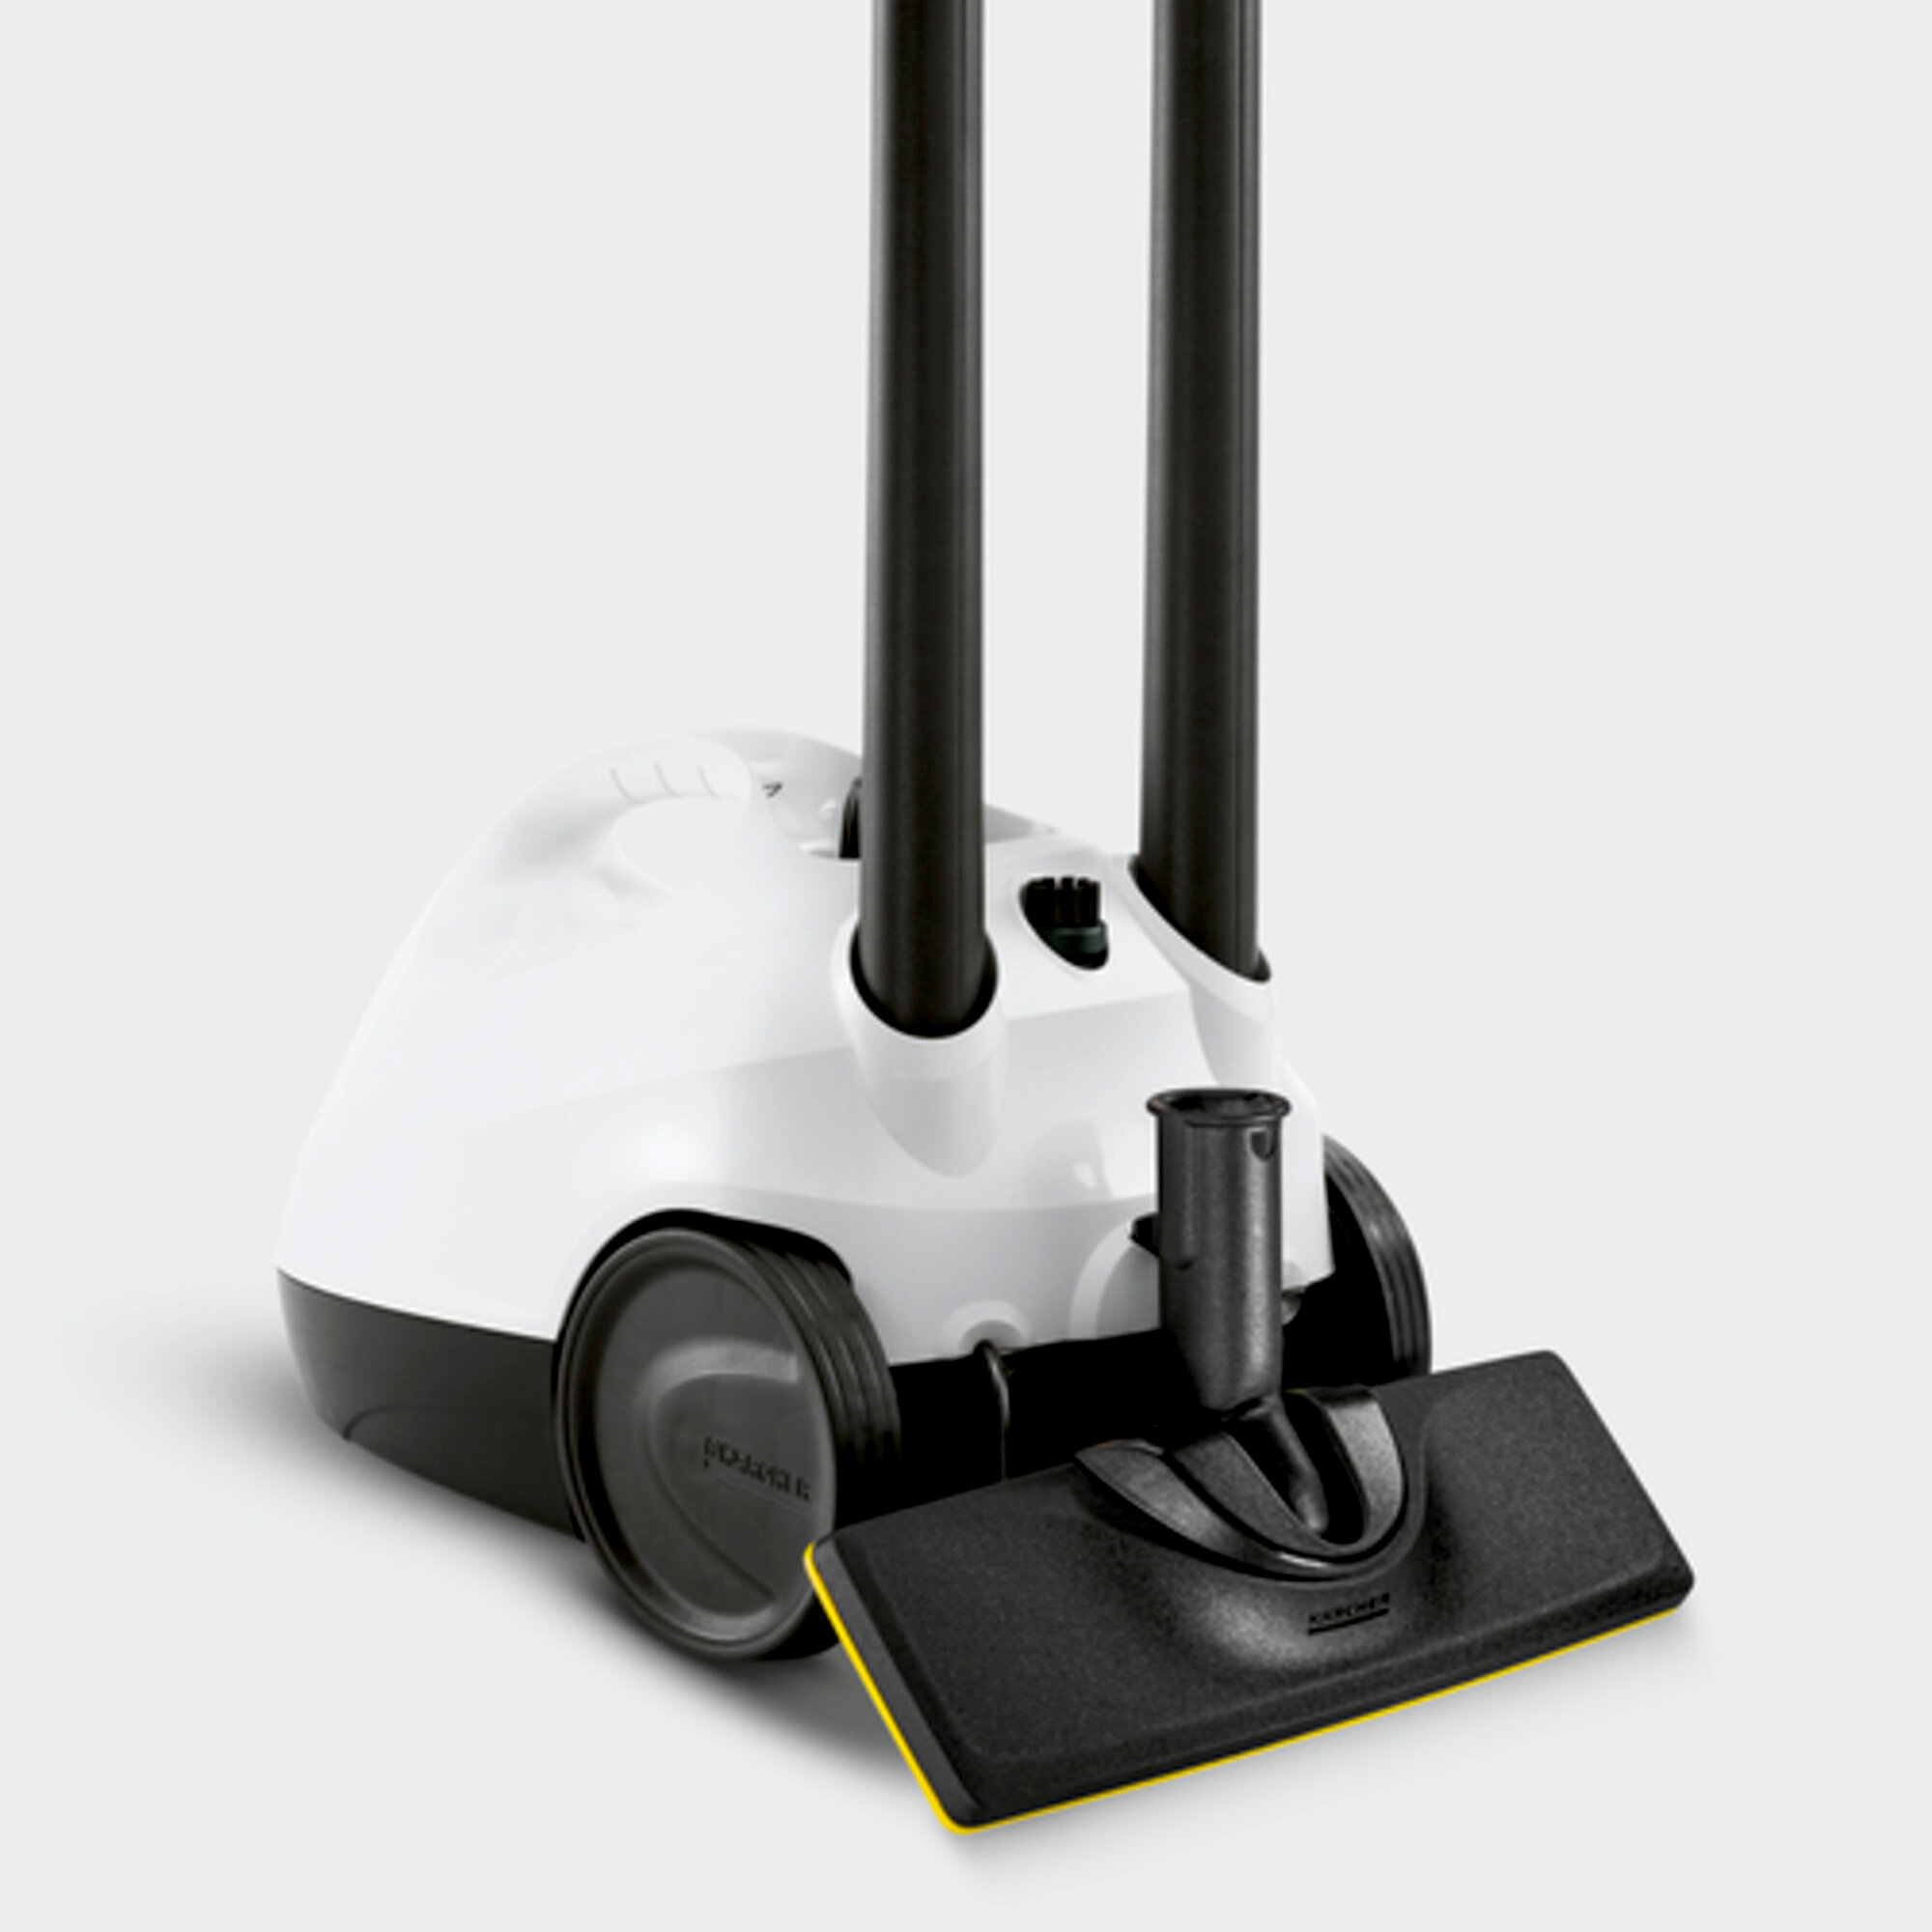 Garo valytuvai SC 2 EasyFix Premium: Priedų saugojimas ir grindų antgalio parkavimas